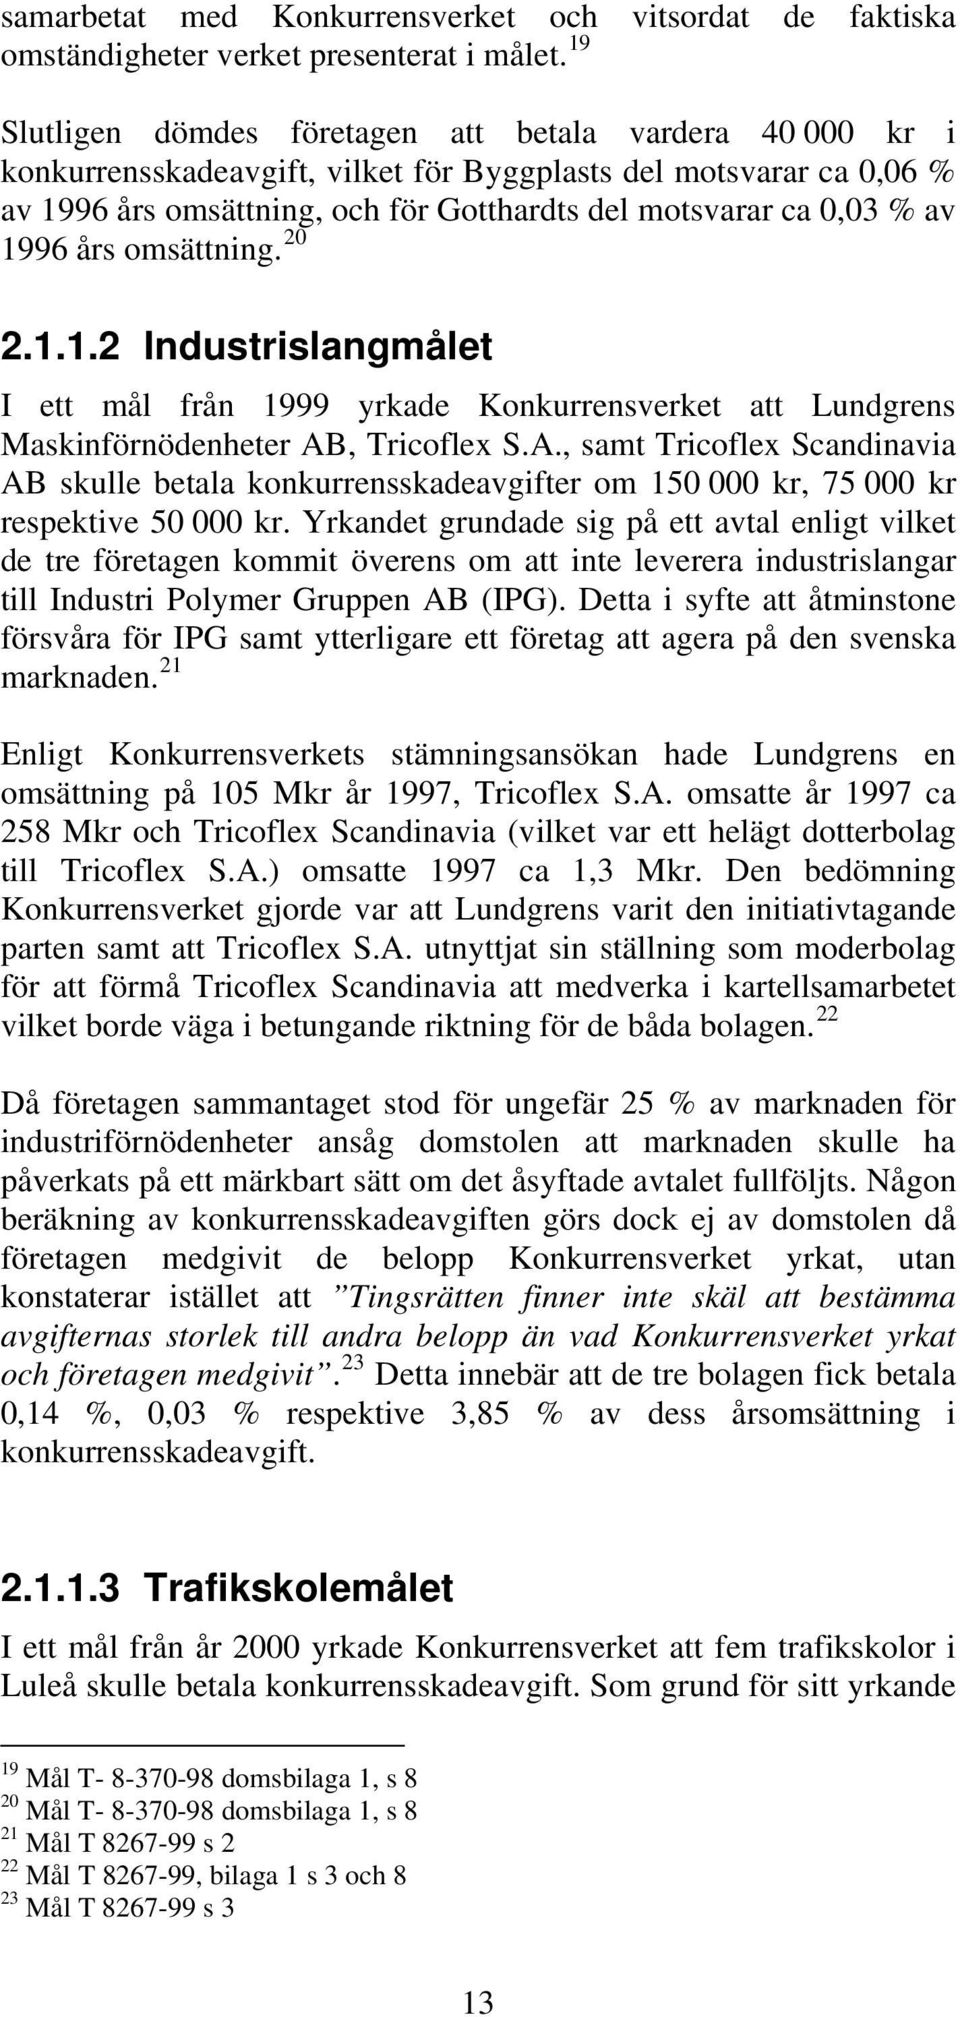 1996 års omsättning. 20 2.1.1.2 Industrislangmålet I ett mål från 1999 yrkade Konkurrensverket att Lundgrens Maskinförnödenheter AB